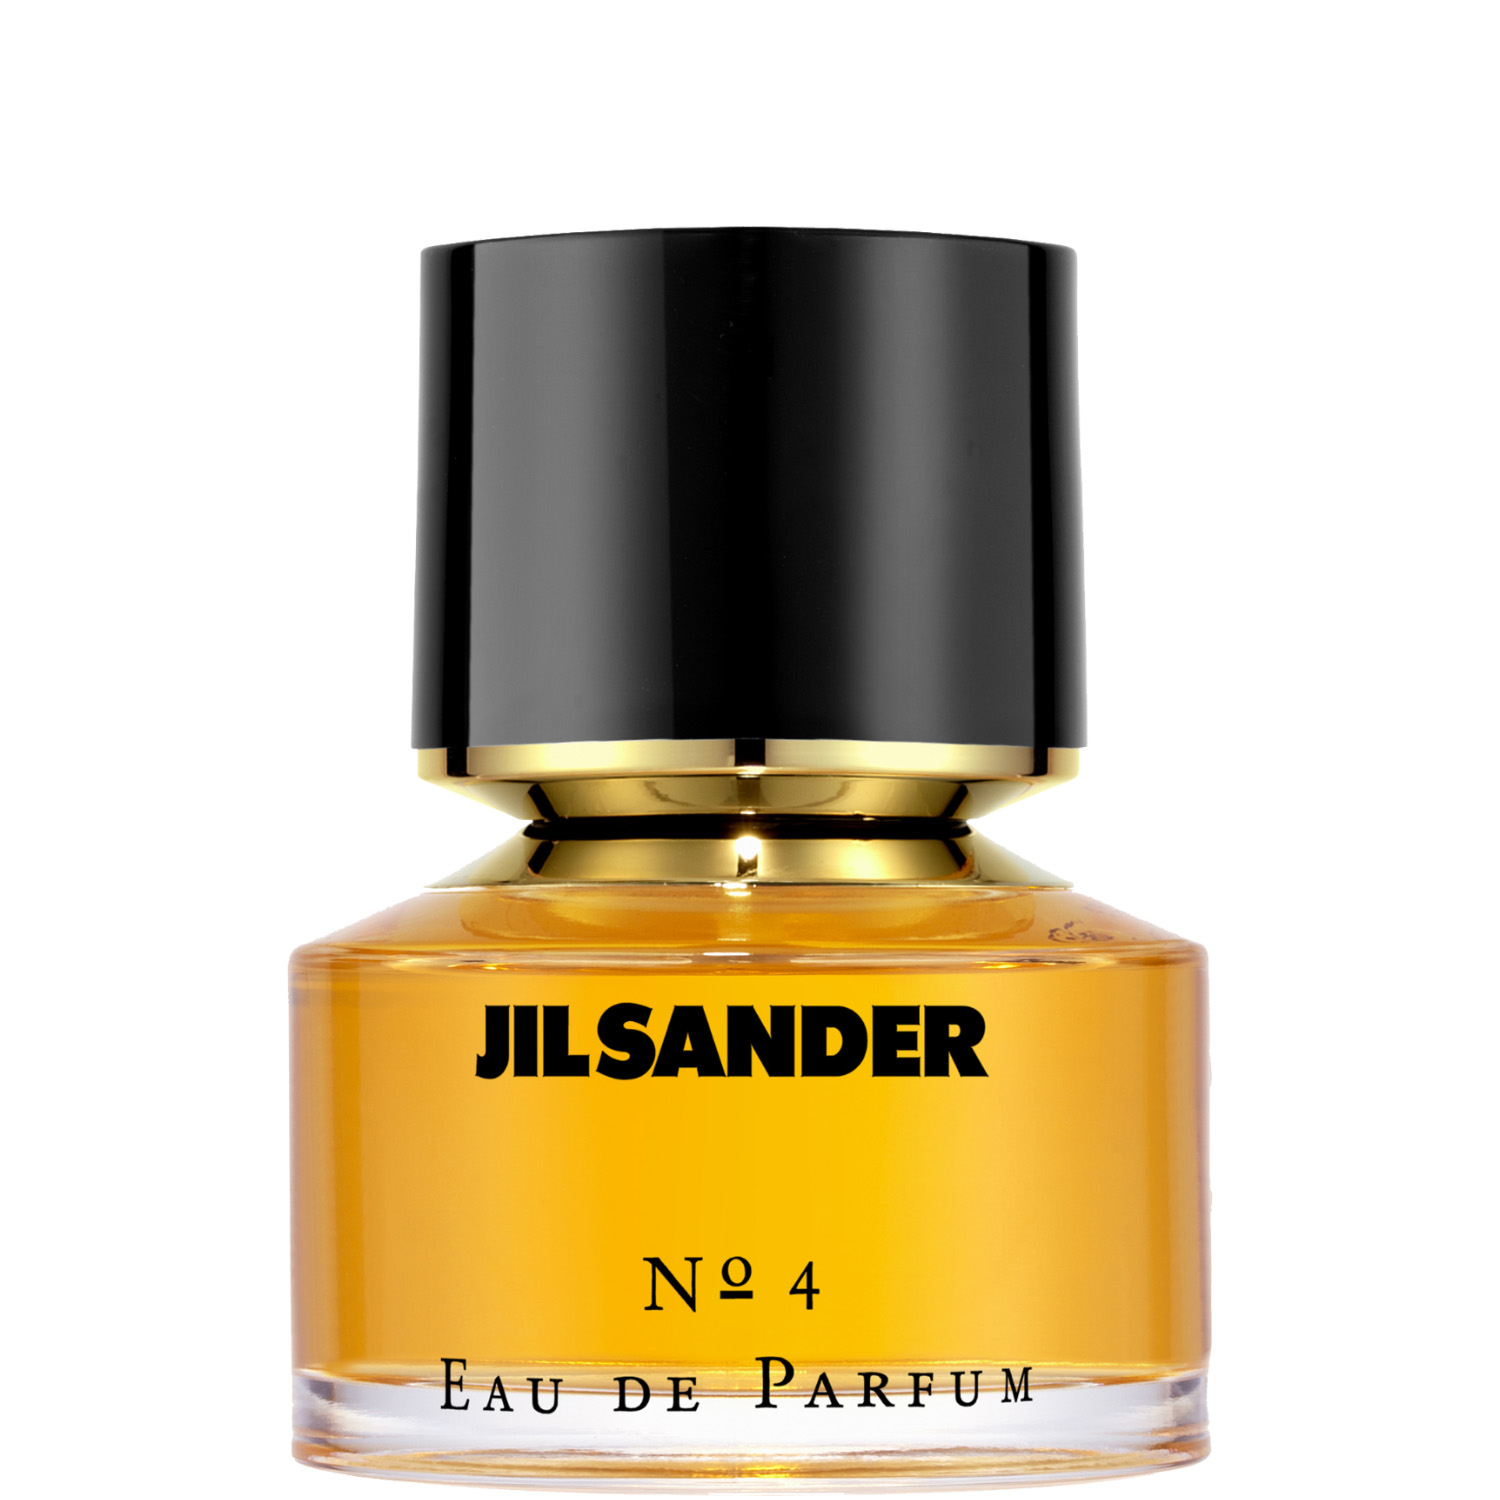 Jil Sander No. 4 Eau de Parfum 30ml